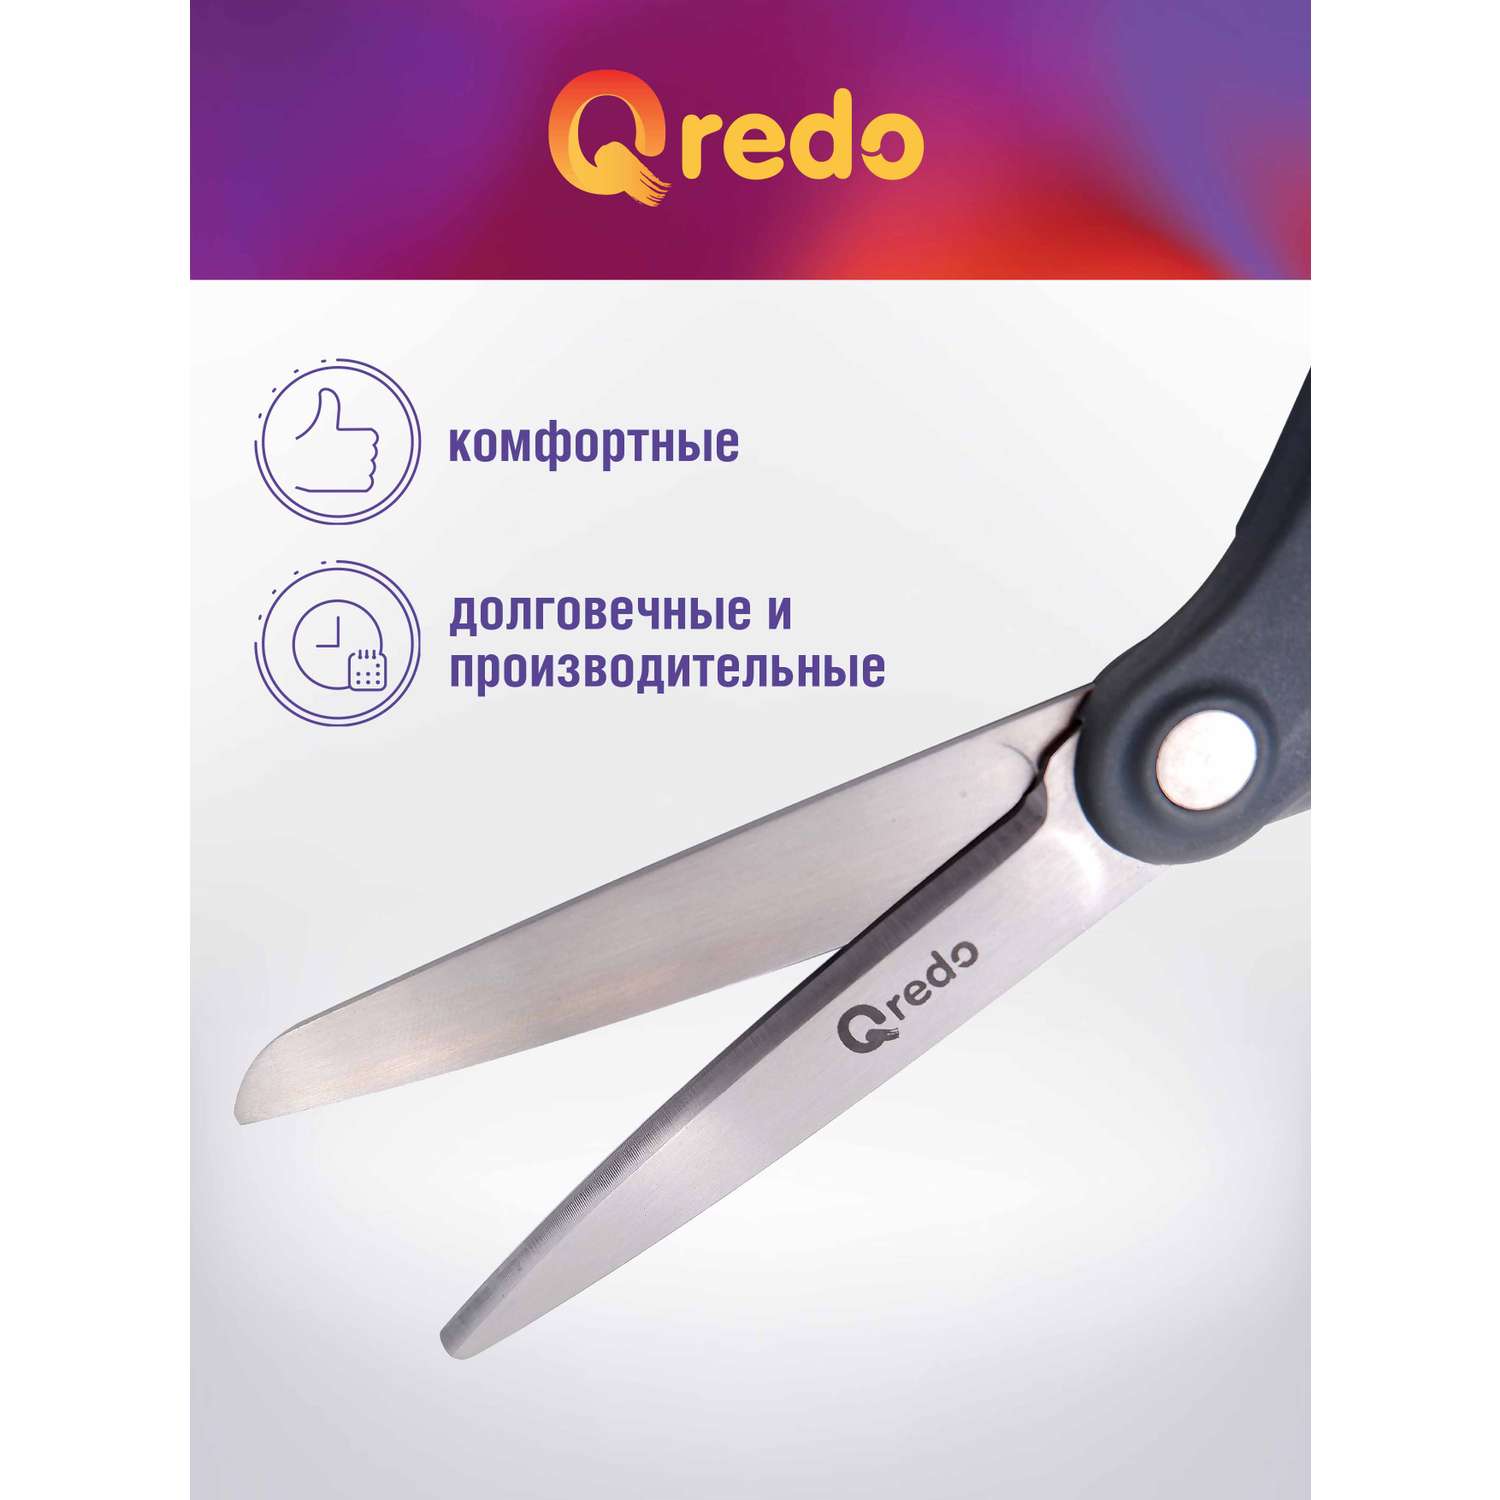 Ножницы Qredo 20 см ADAMANT 3D лезвие эргономичные ручки серый синий пластик прорезиненные - фото 3